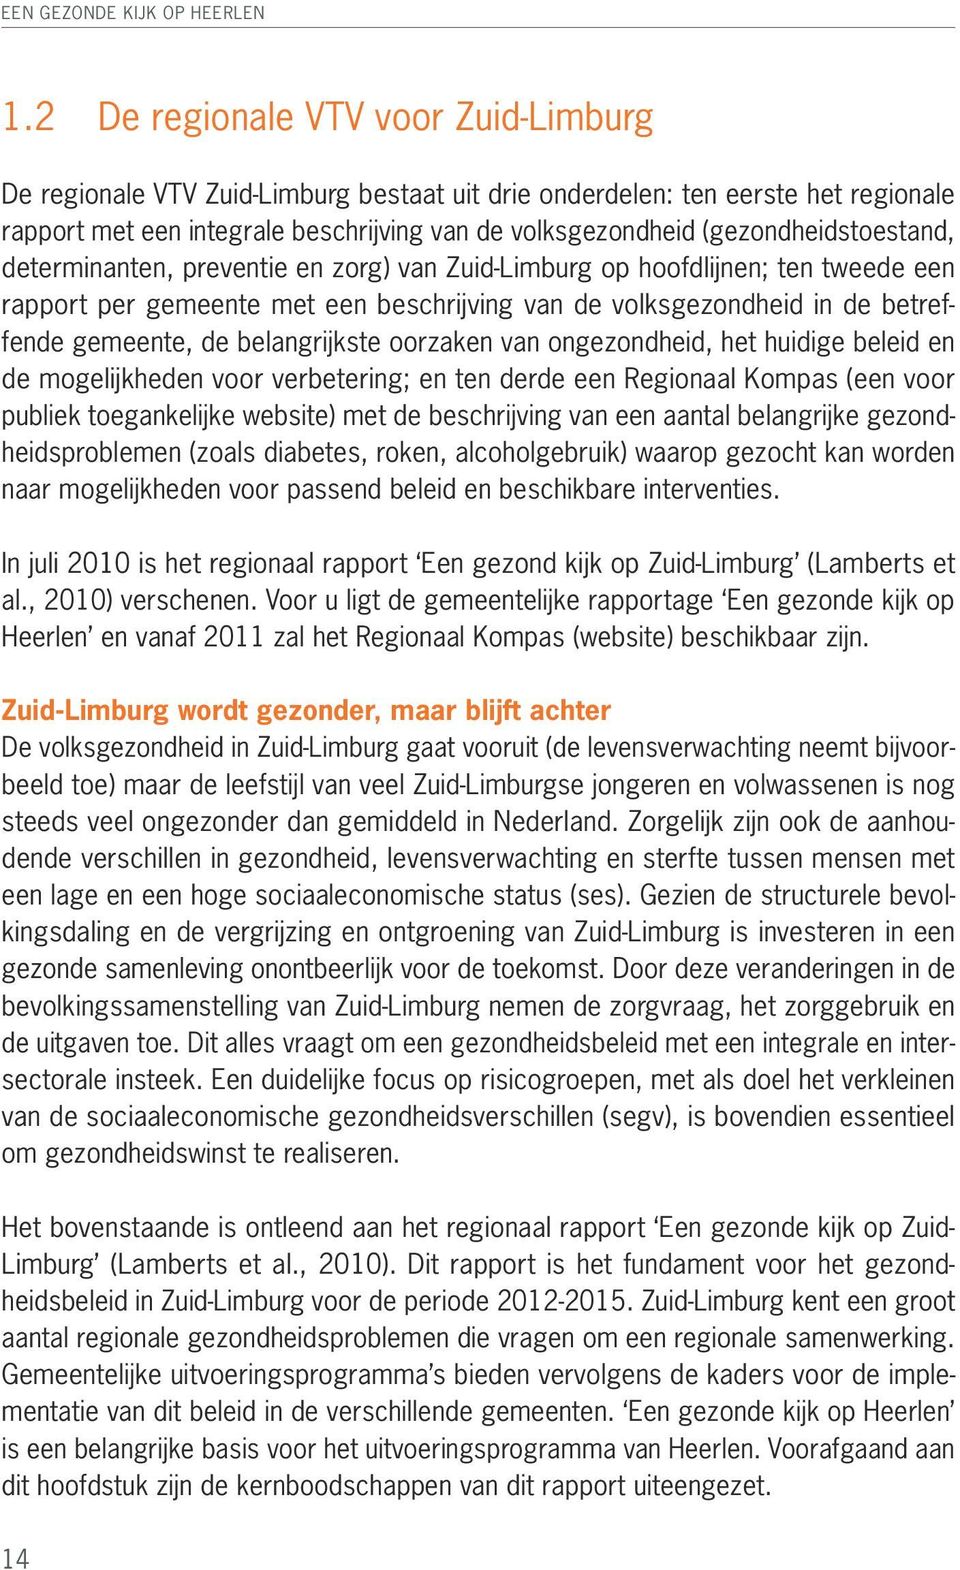 (gezondheidstoestand, determinanten, preventie en zorg) van Zuid-Limburg op hoofdlijnen; ten tweede een rapport per gemeente met een beschrijving van de volksgezondheid in de betreffende gemeente, de